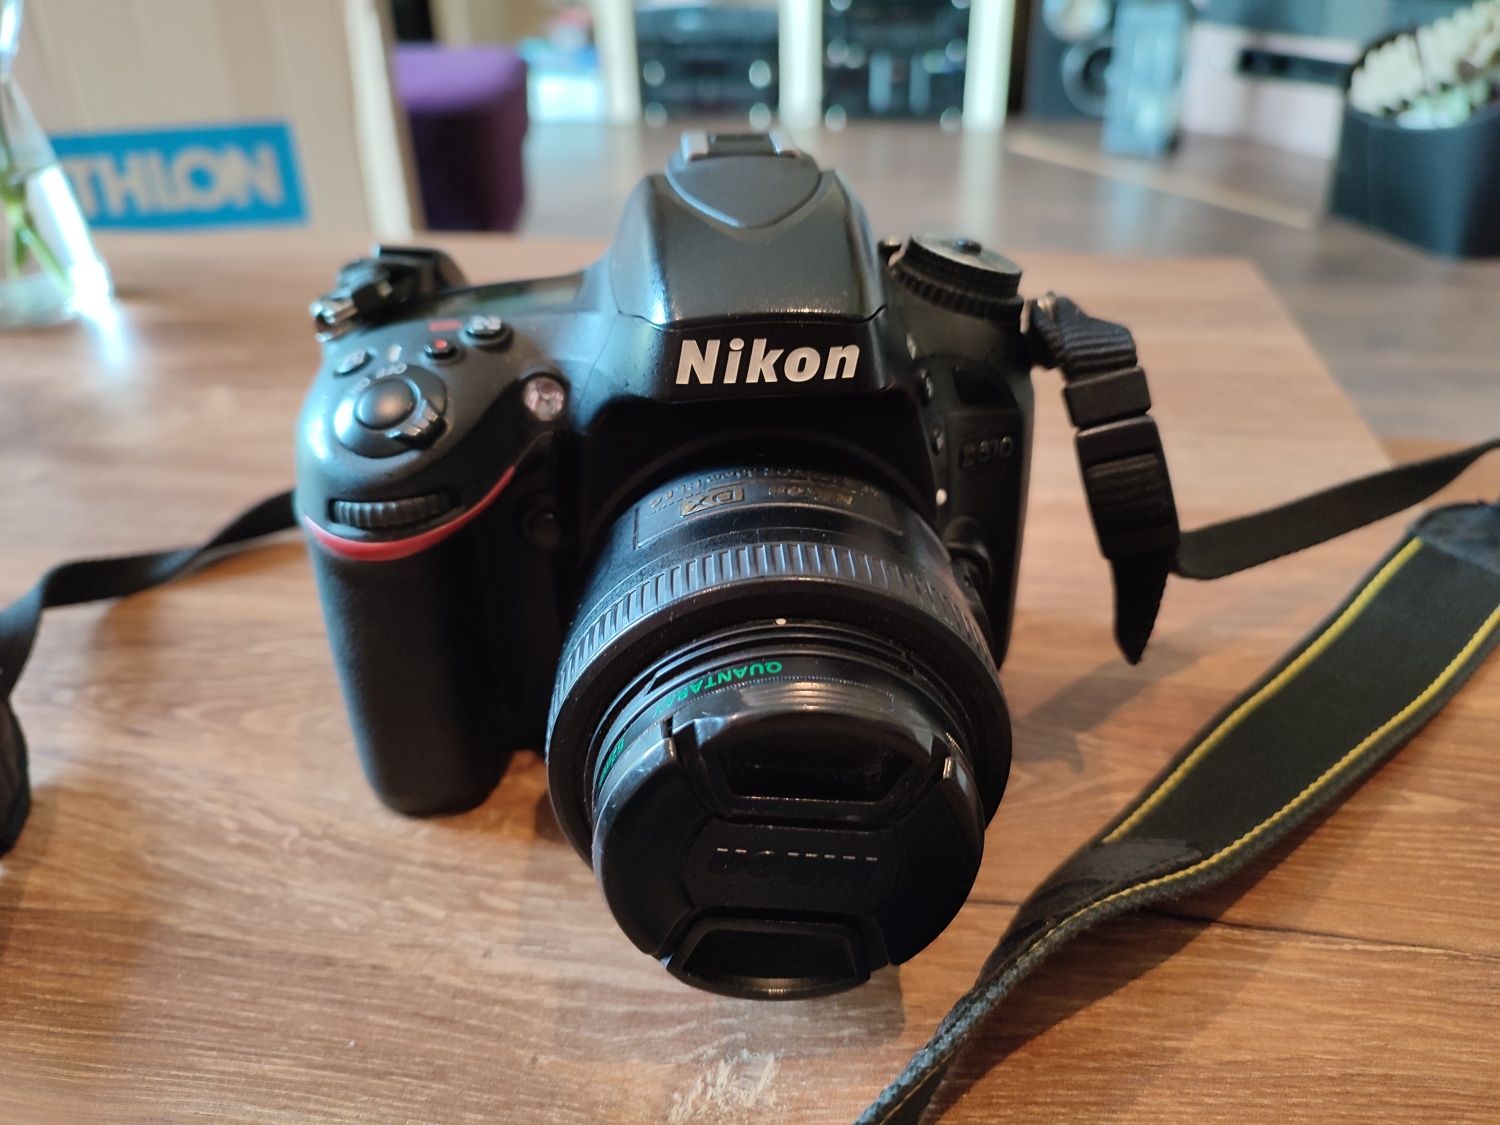 Nikon d610 + nikkor 35mm 1.8